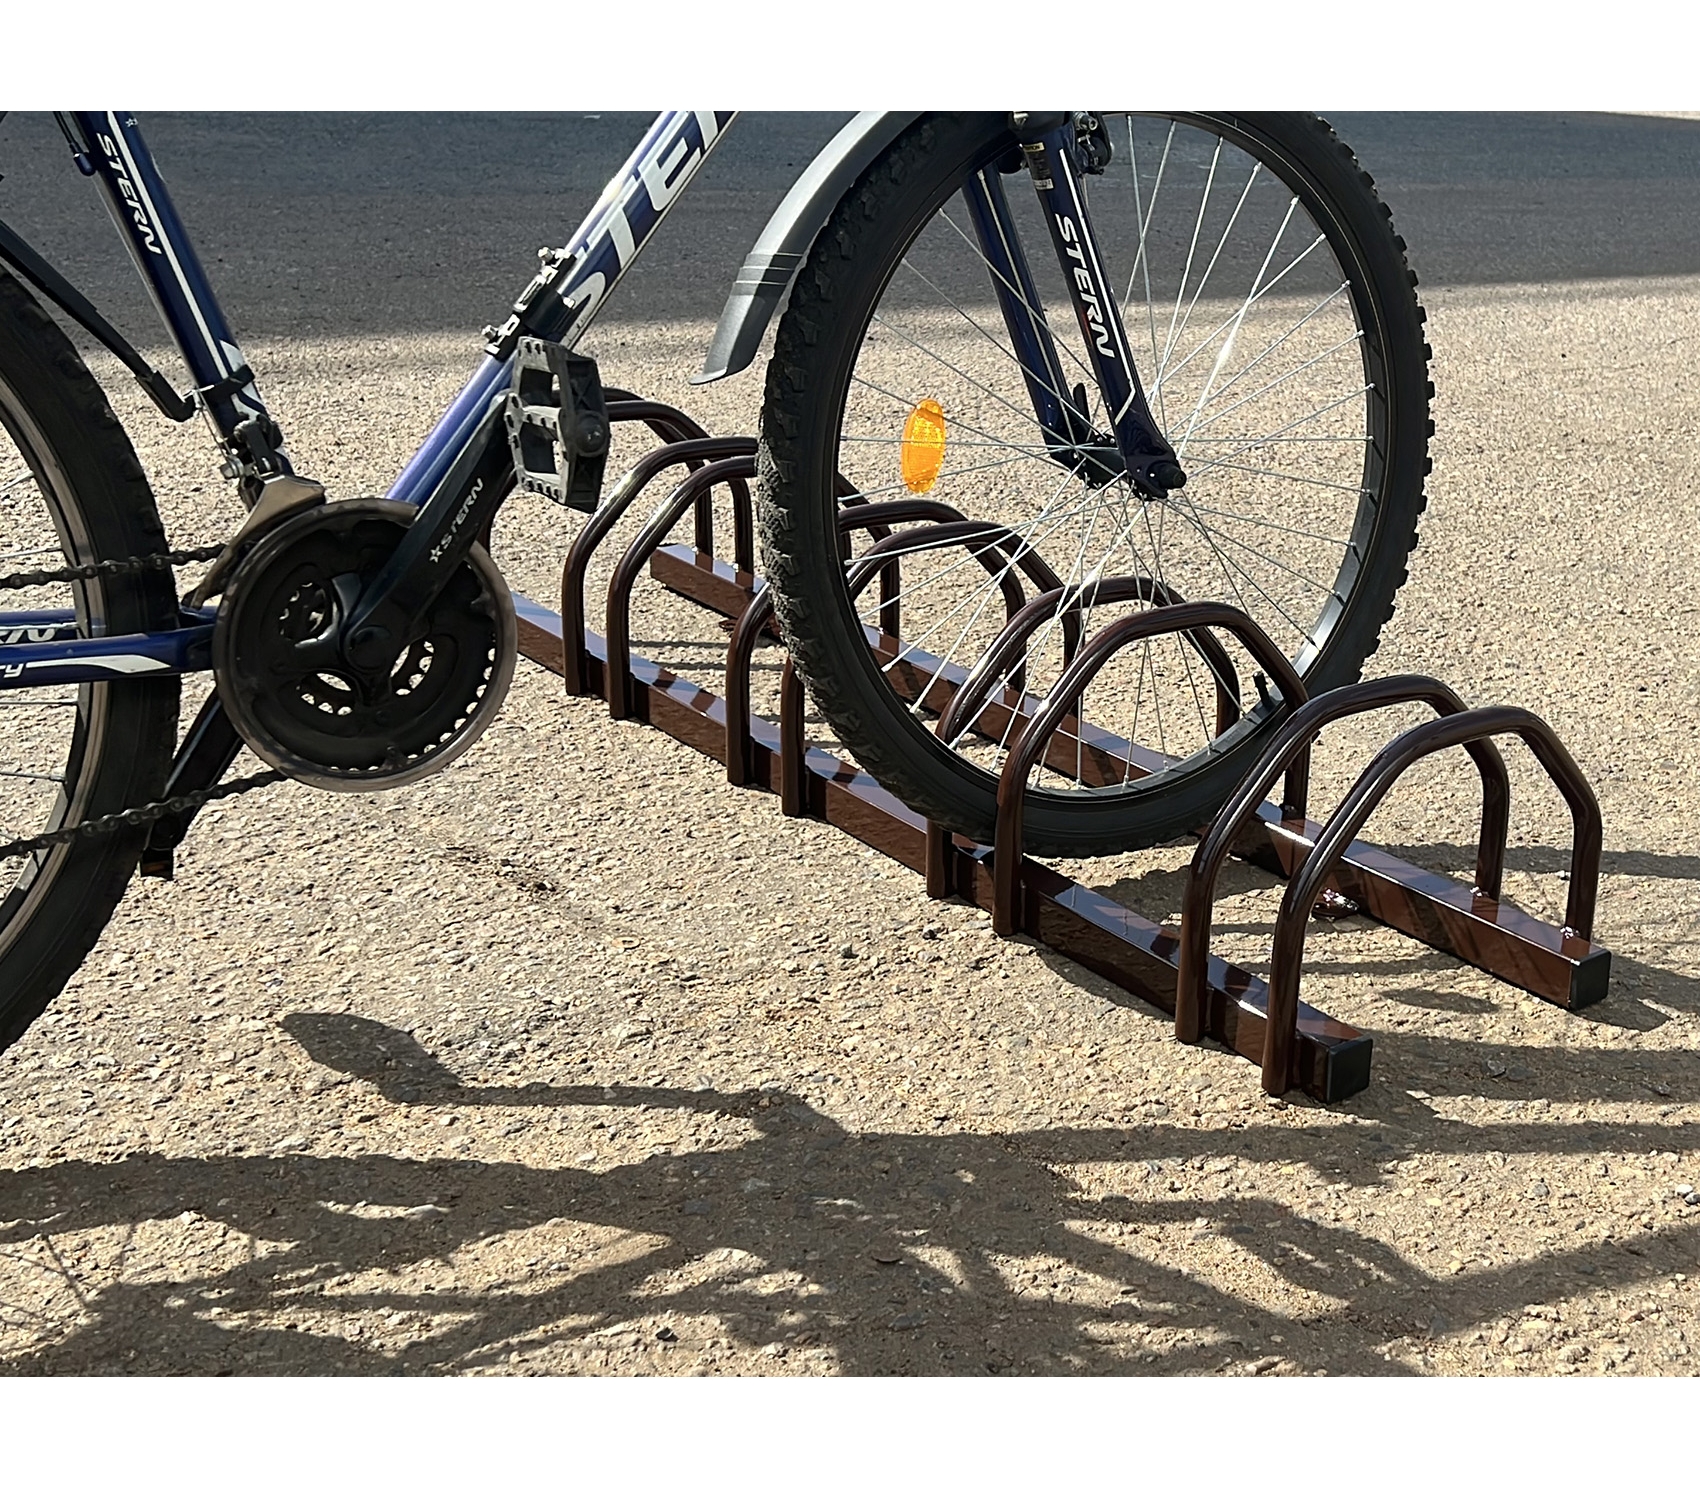 Подкатная стойка для хранения 4 велосипедов (6 велосипедов, если 4 из них детские)